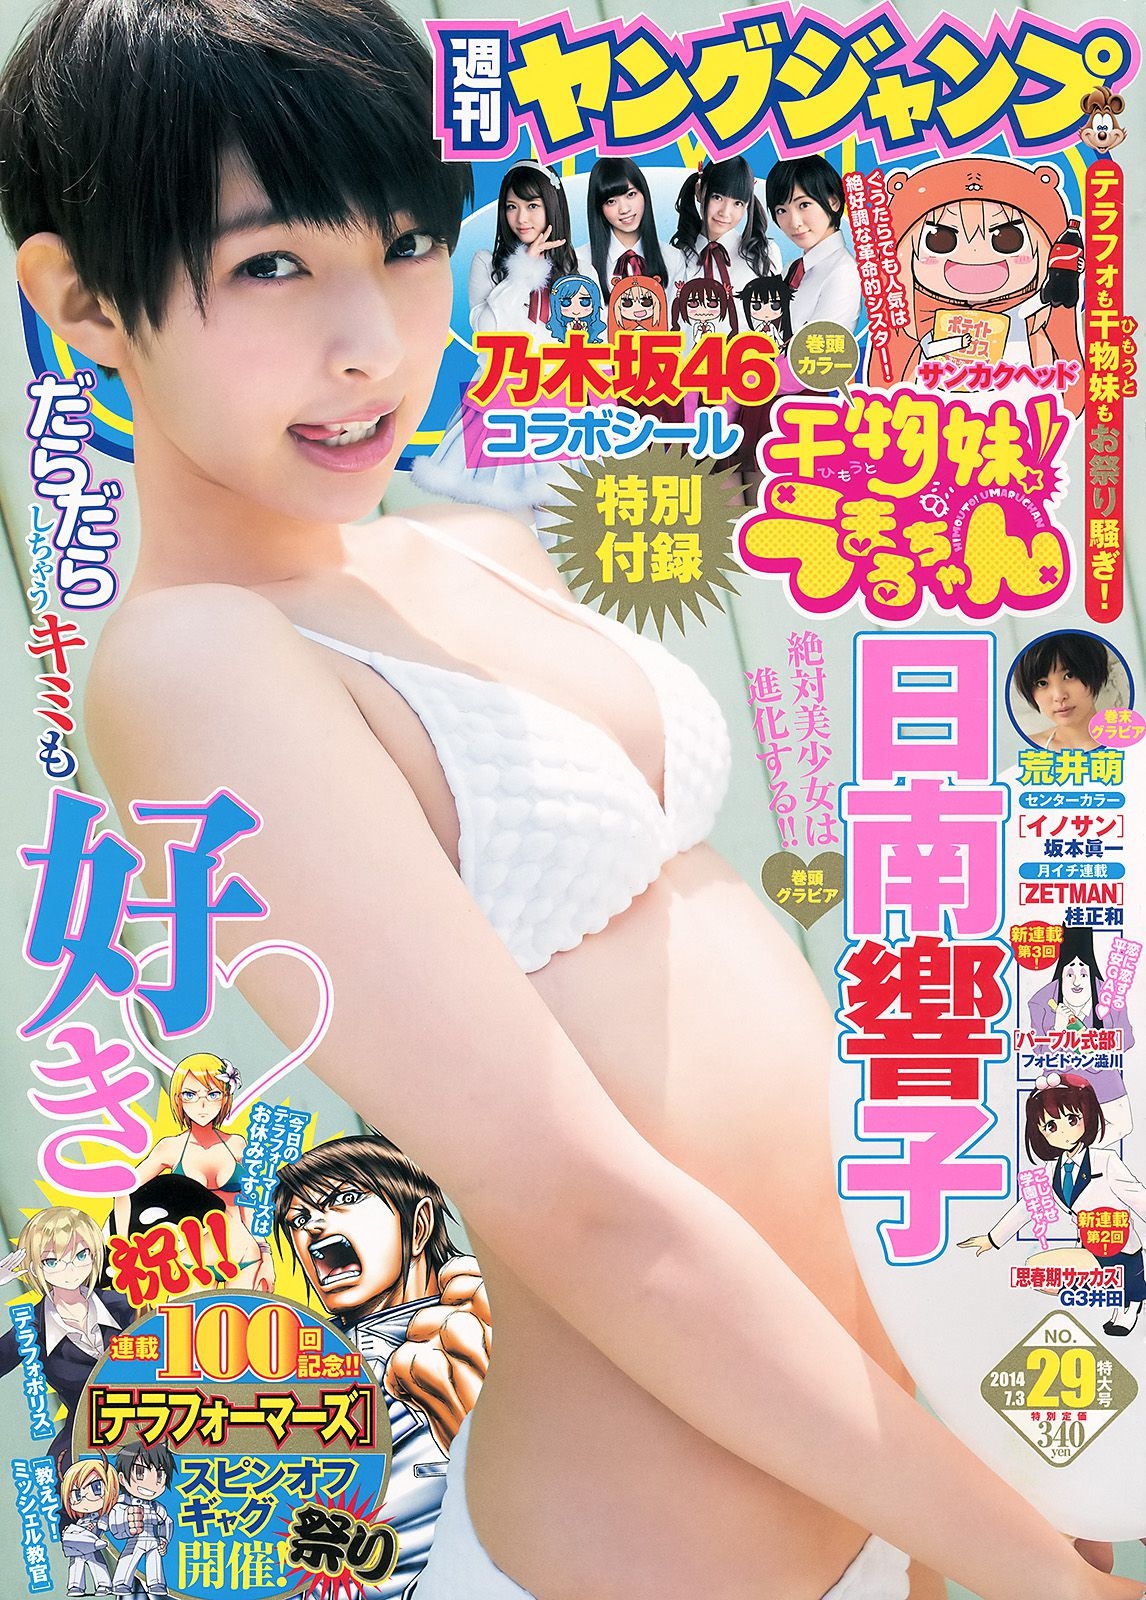 日南響子 荒井萌 [Weekly Young Jump 週刊ヤングジャンプ] 2014年No.29 写真杂志 